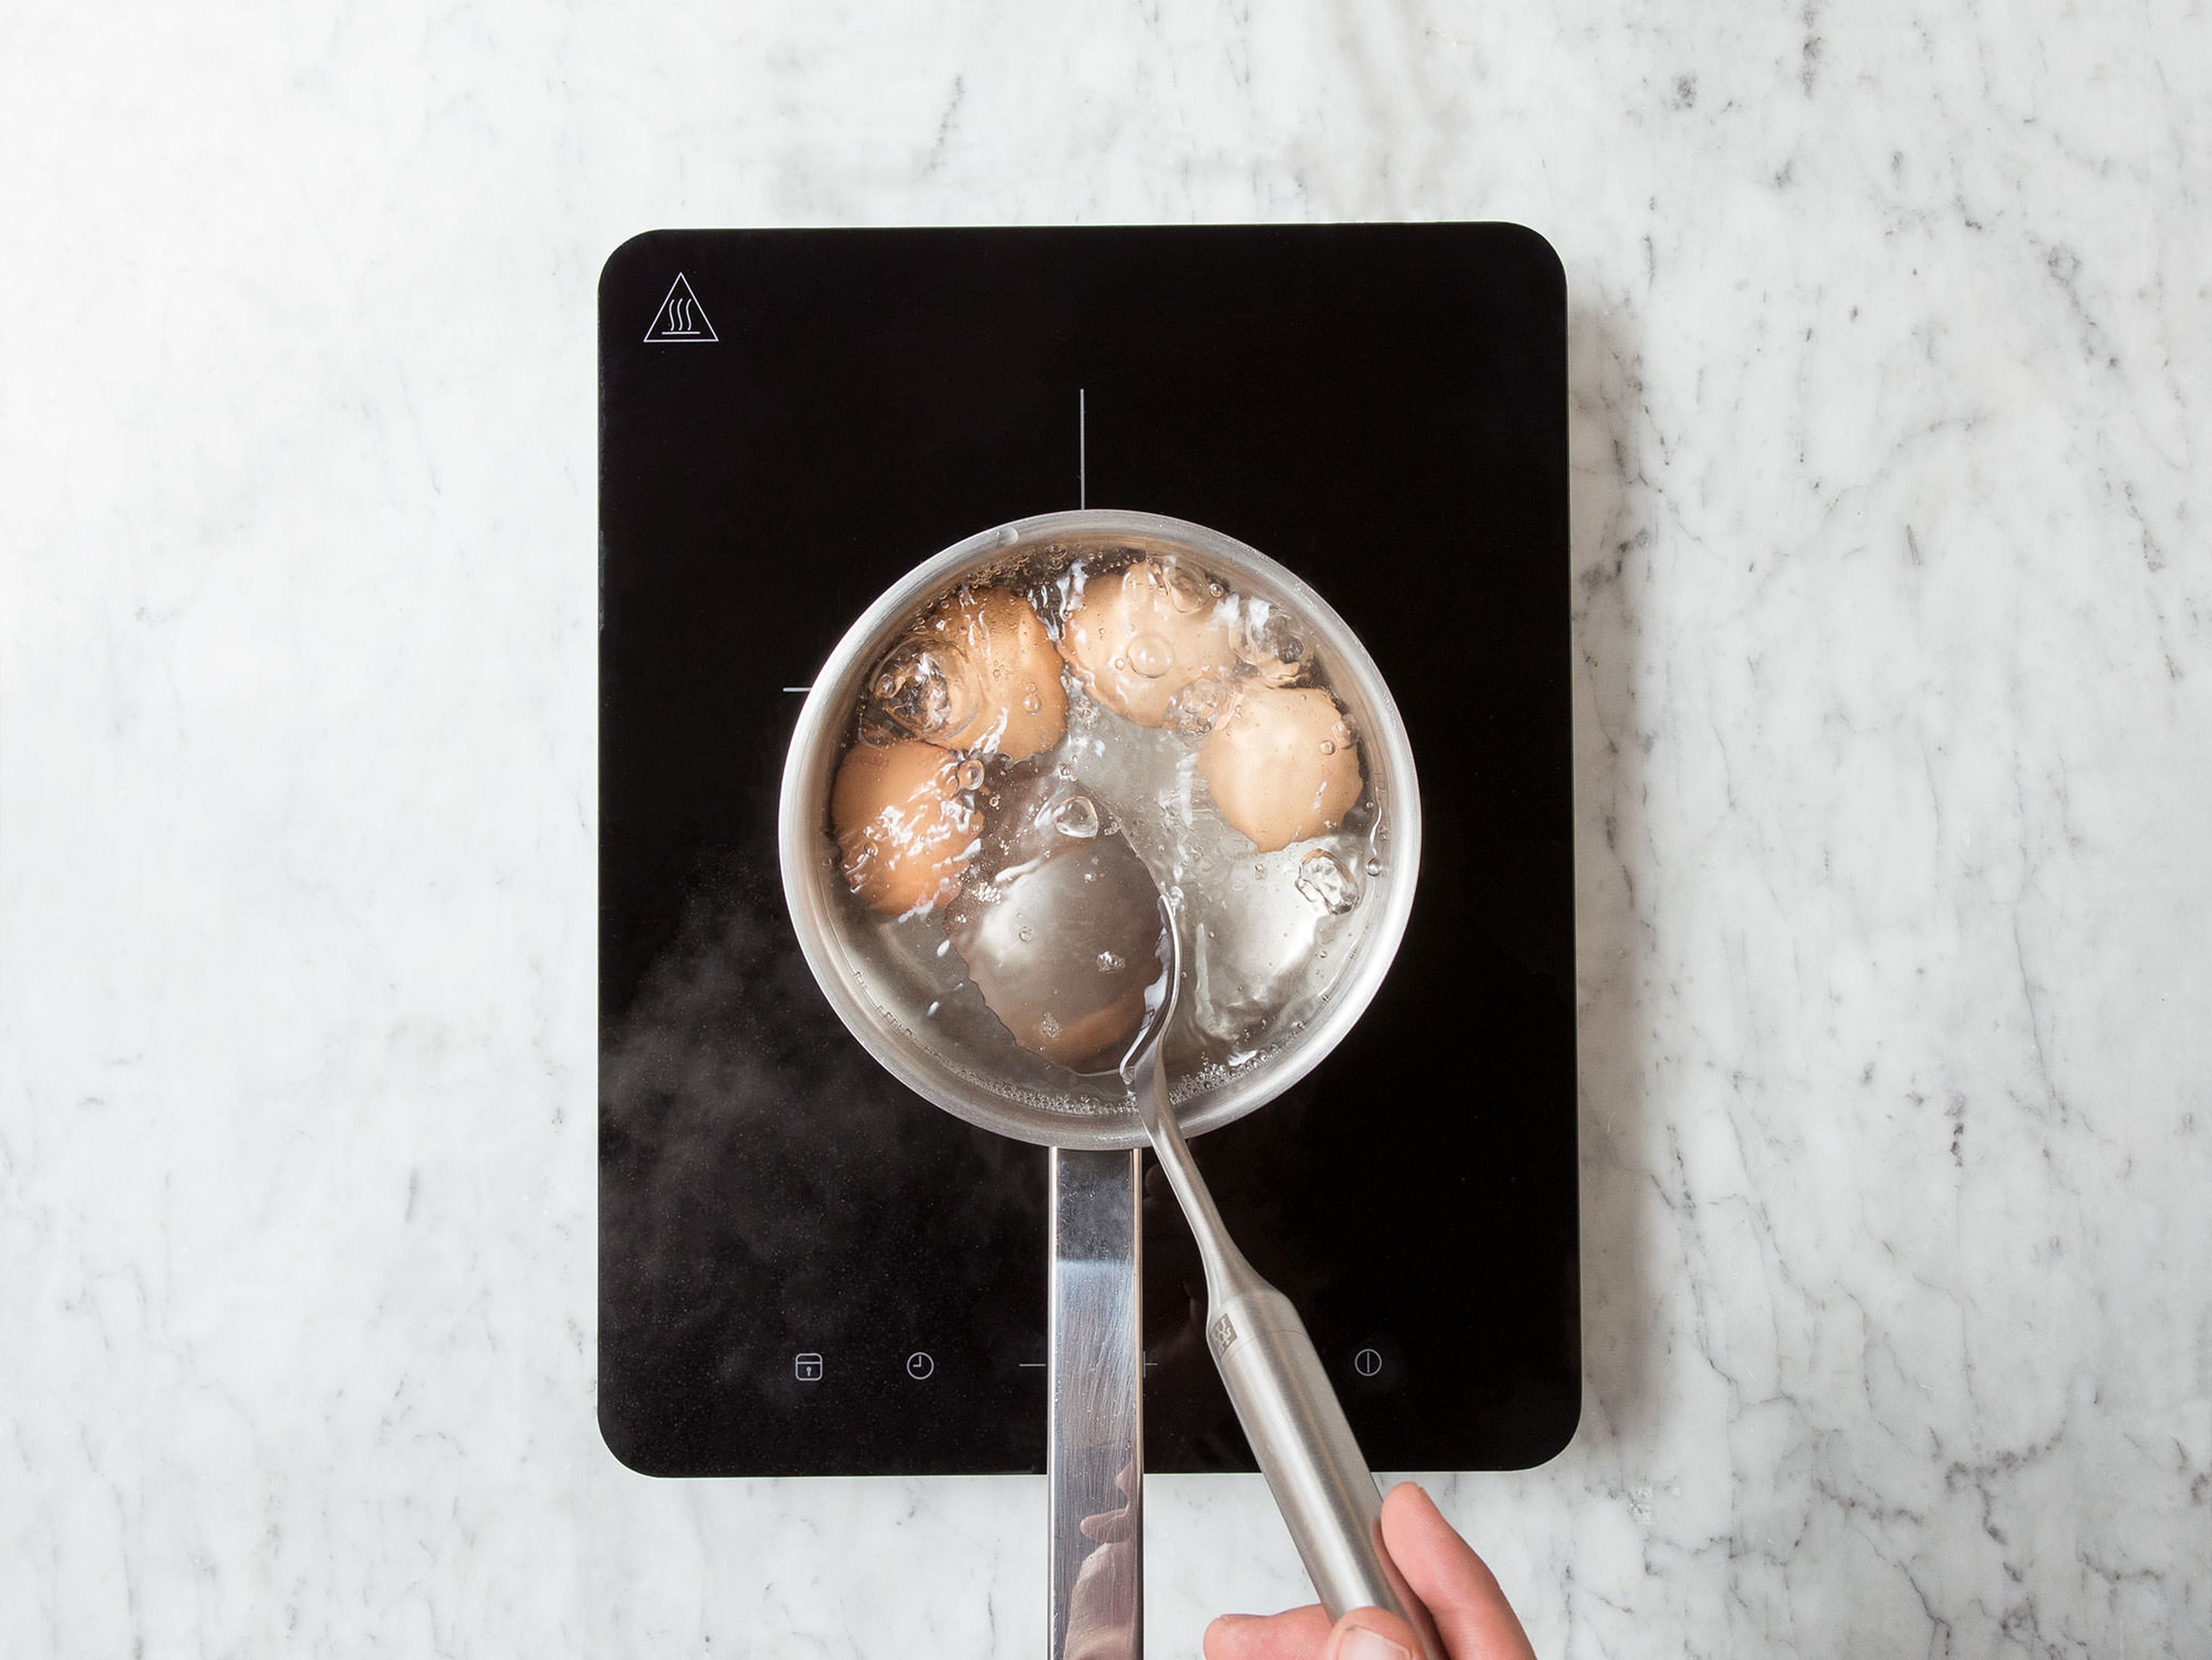 Wasser in einem Topf zum Kochen bringen. Eier im köchelnden Wasser ca. 6 - 7 Min. kochen. Anschließend unter kaltem Wasser abspülen und beiseitestellen.